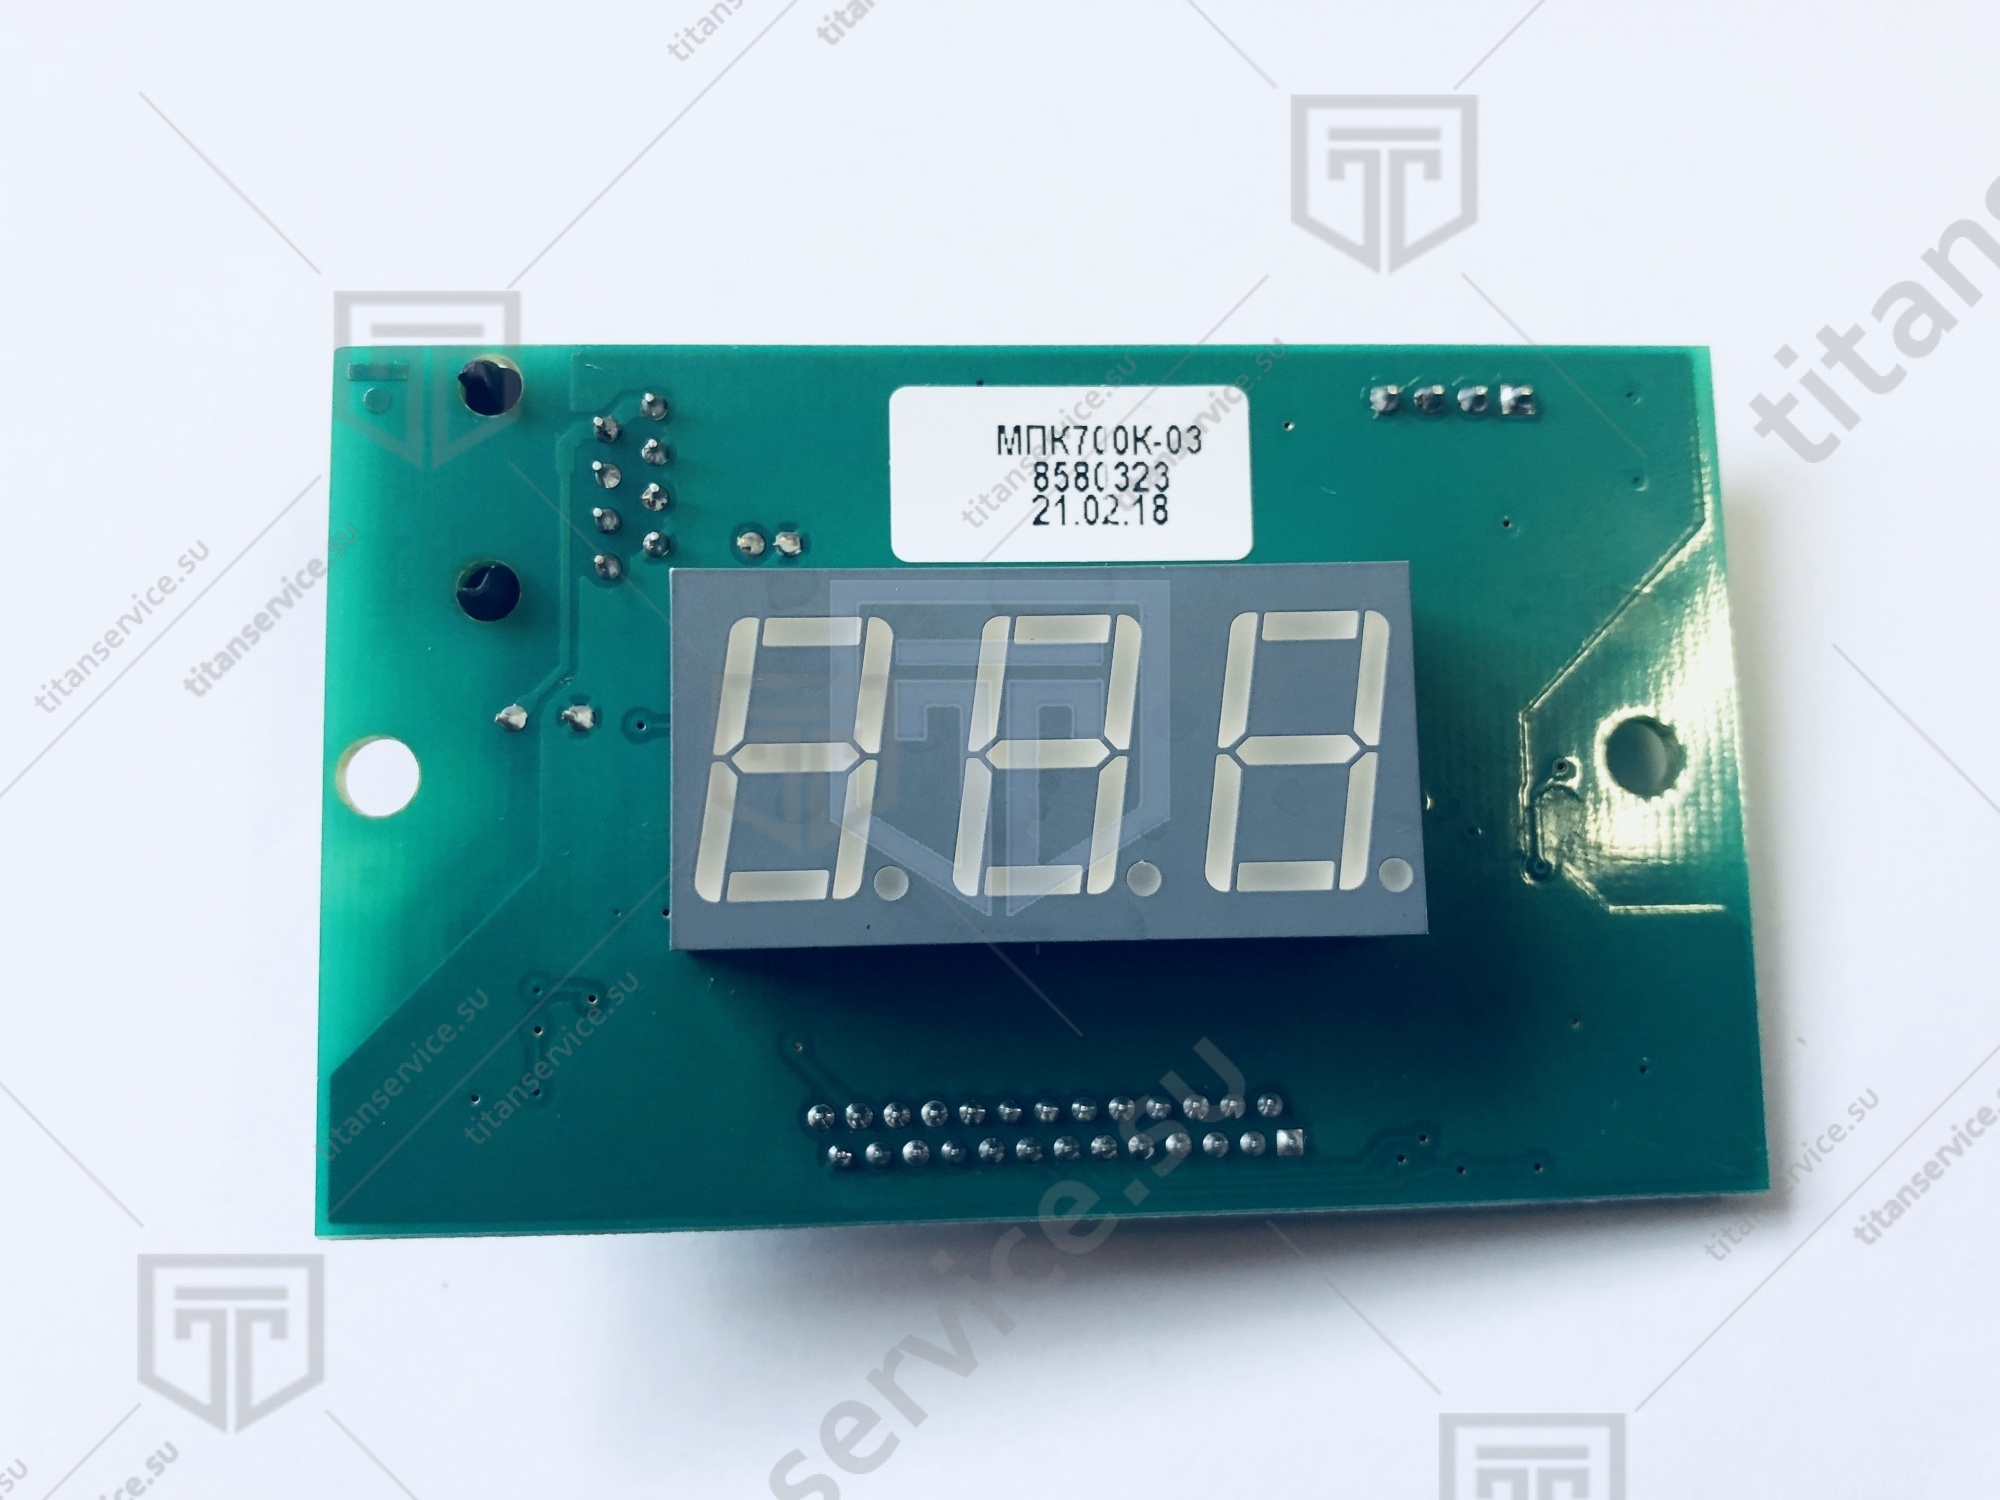 Контроллер МПК-700К-03, плата индикации (МРК700К-03_i11) - фото №2